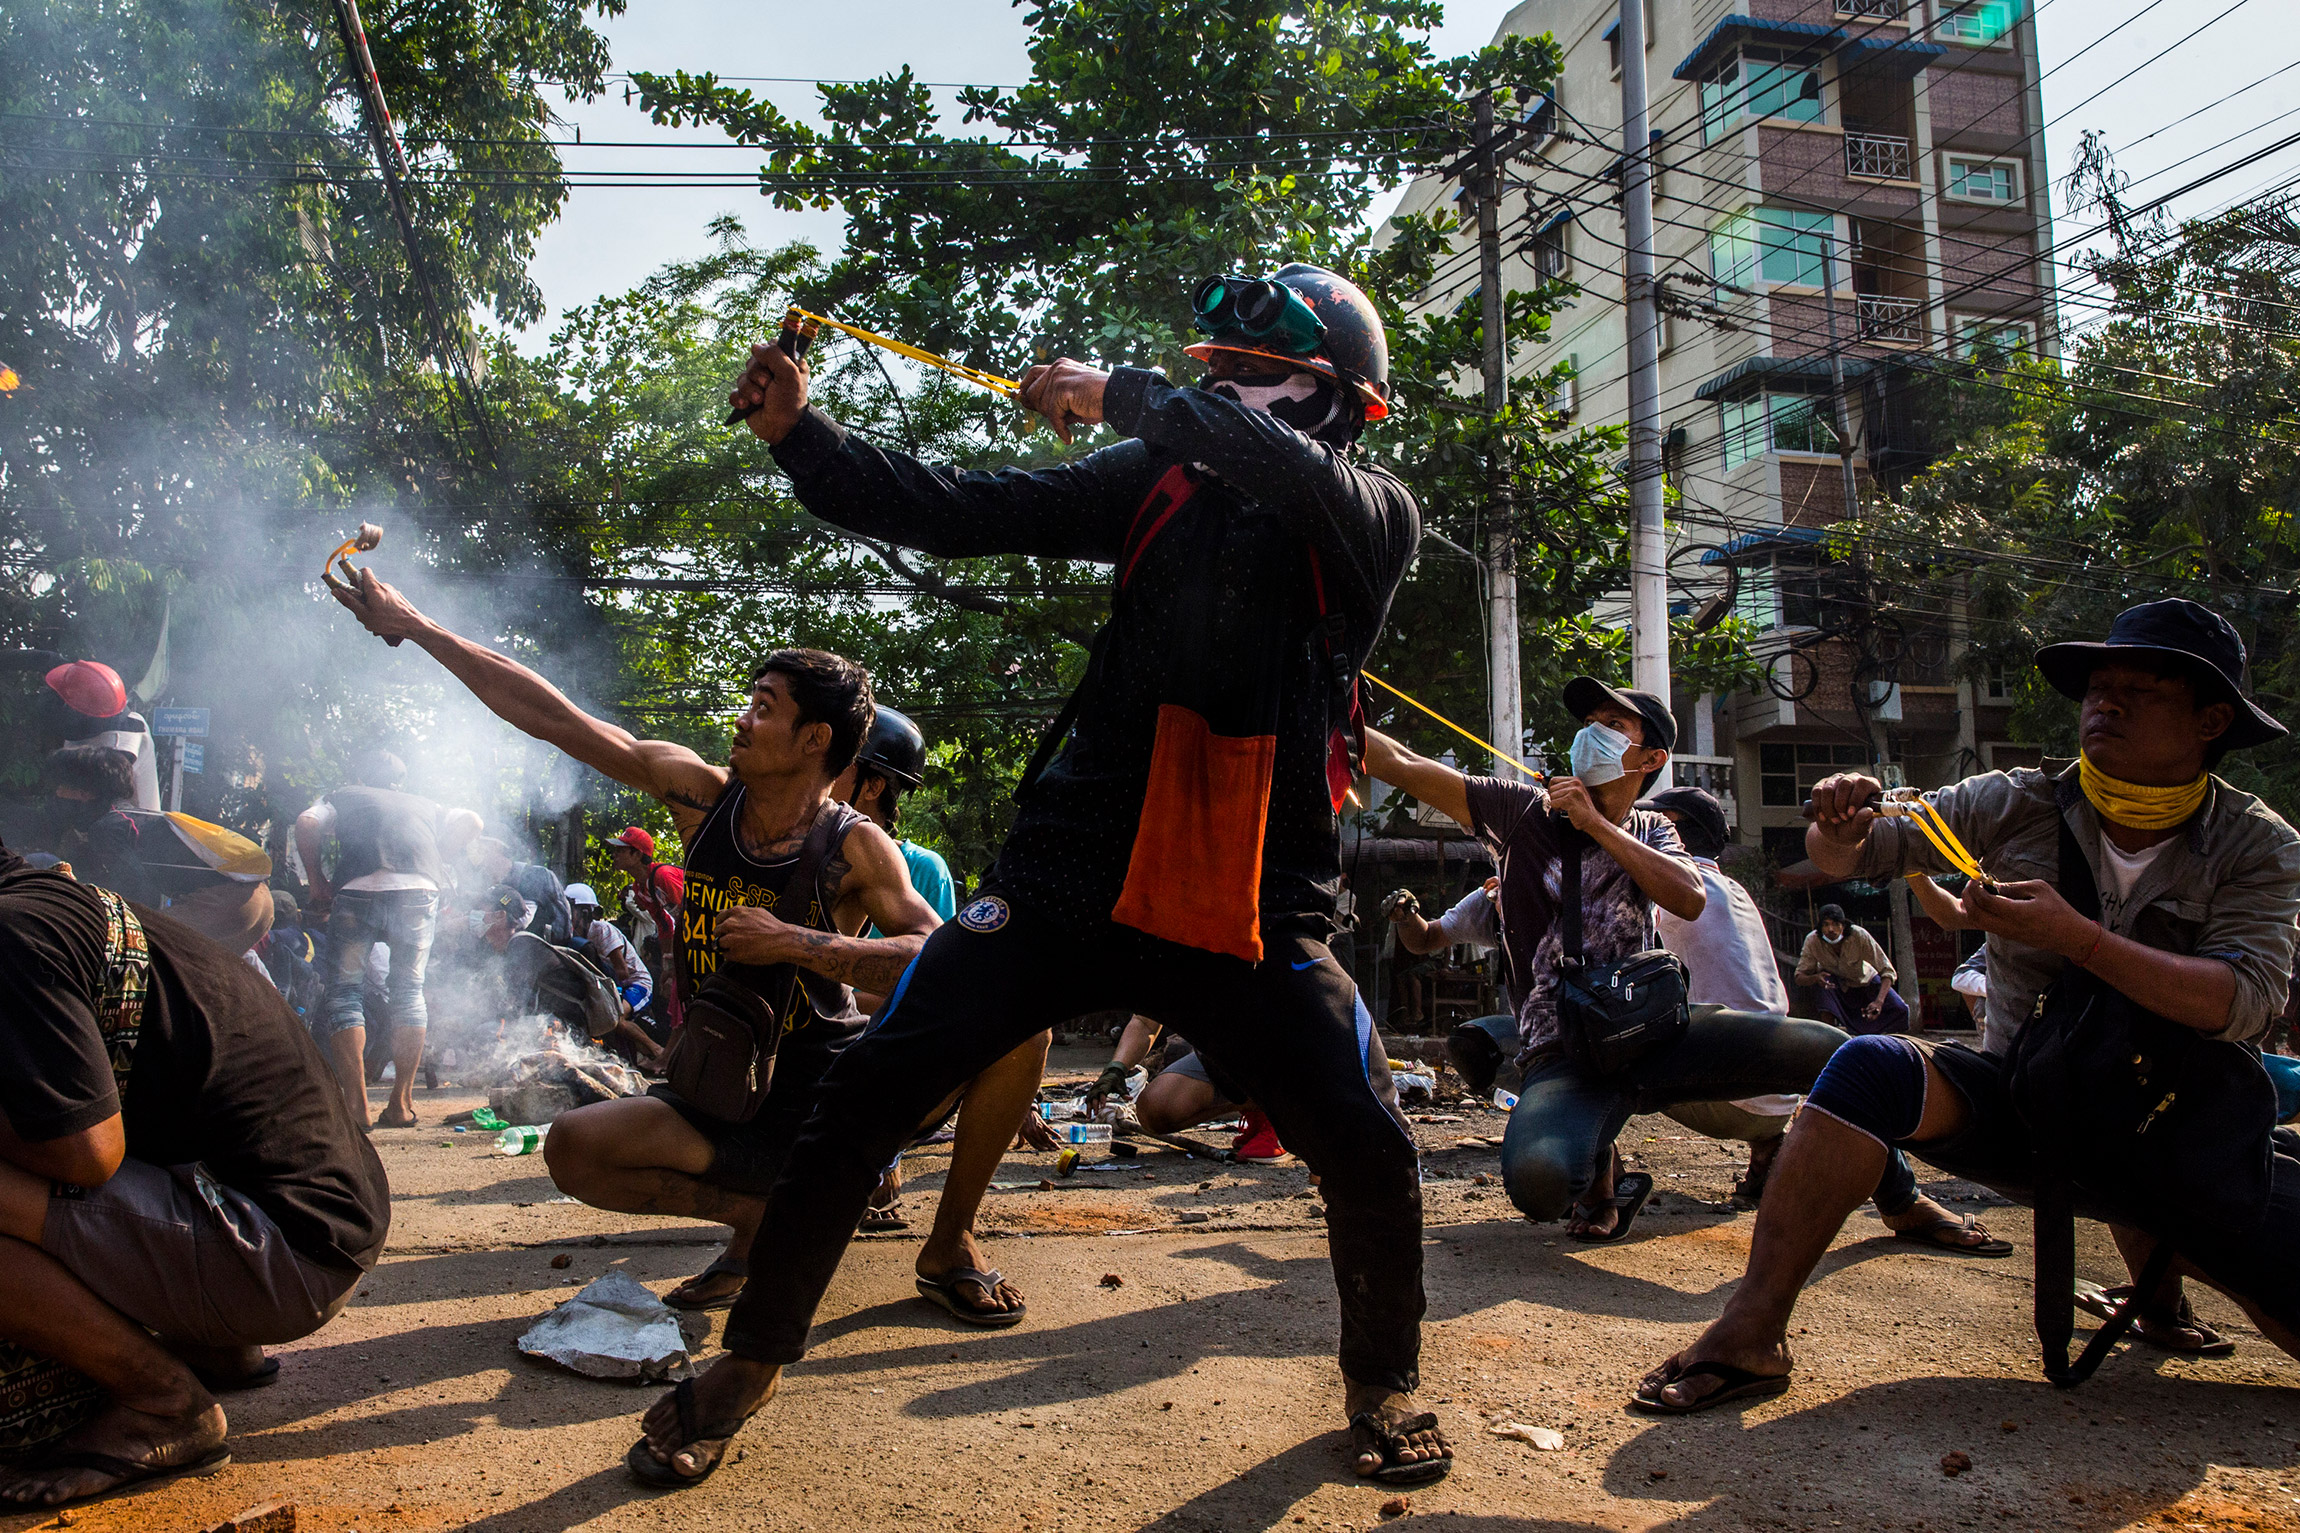 Автор:  аноним.

&laquo;Рогатки&raquo;.

Протестующие в Мьянме используют рогатки и другое самодельное оружие во время столкновений с полицией и армией.

Массовые протесты в Мьянме вспыхнули 1 февраля 2021 года после государственного переворота, совершенного военными. Только за один день протестов были убиты 114 мирных жителей. Именно из соображений безопасности автор, сделавший этот снимок, вынужден сохранять анонимность